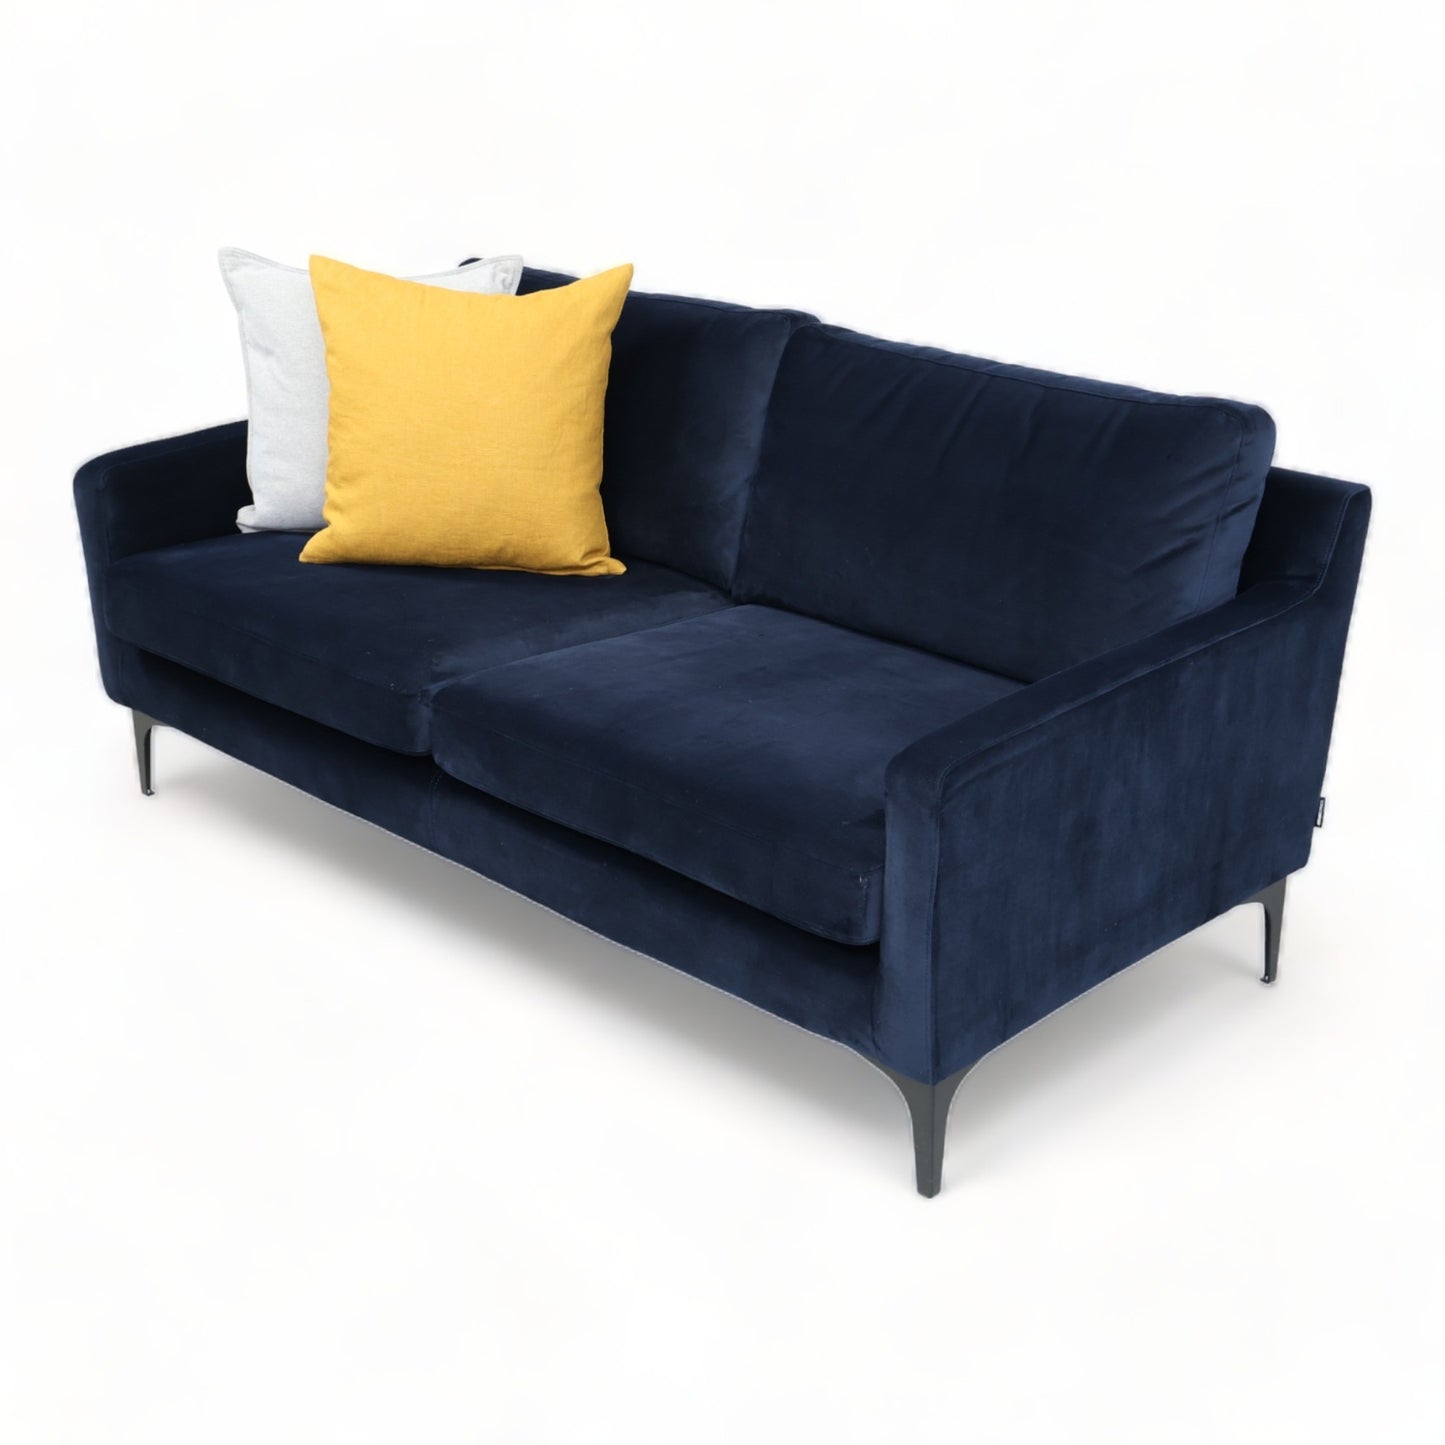 Nyrenset | Mørk blå Sofacompany Astha 2-seter sofa i velur